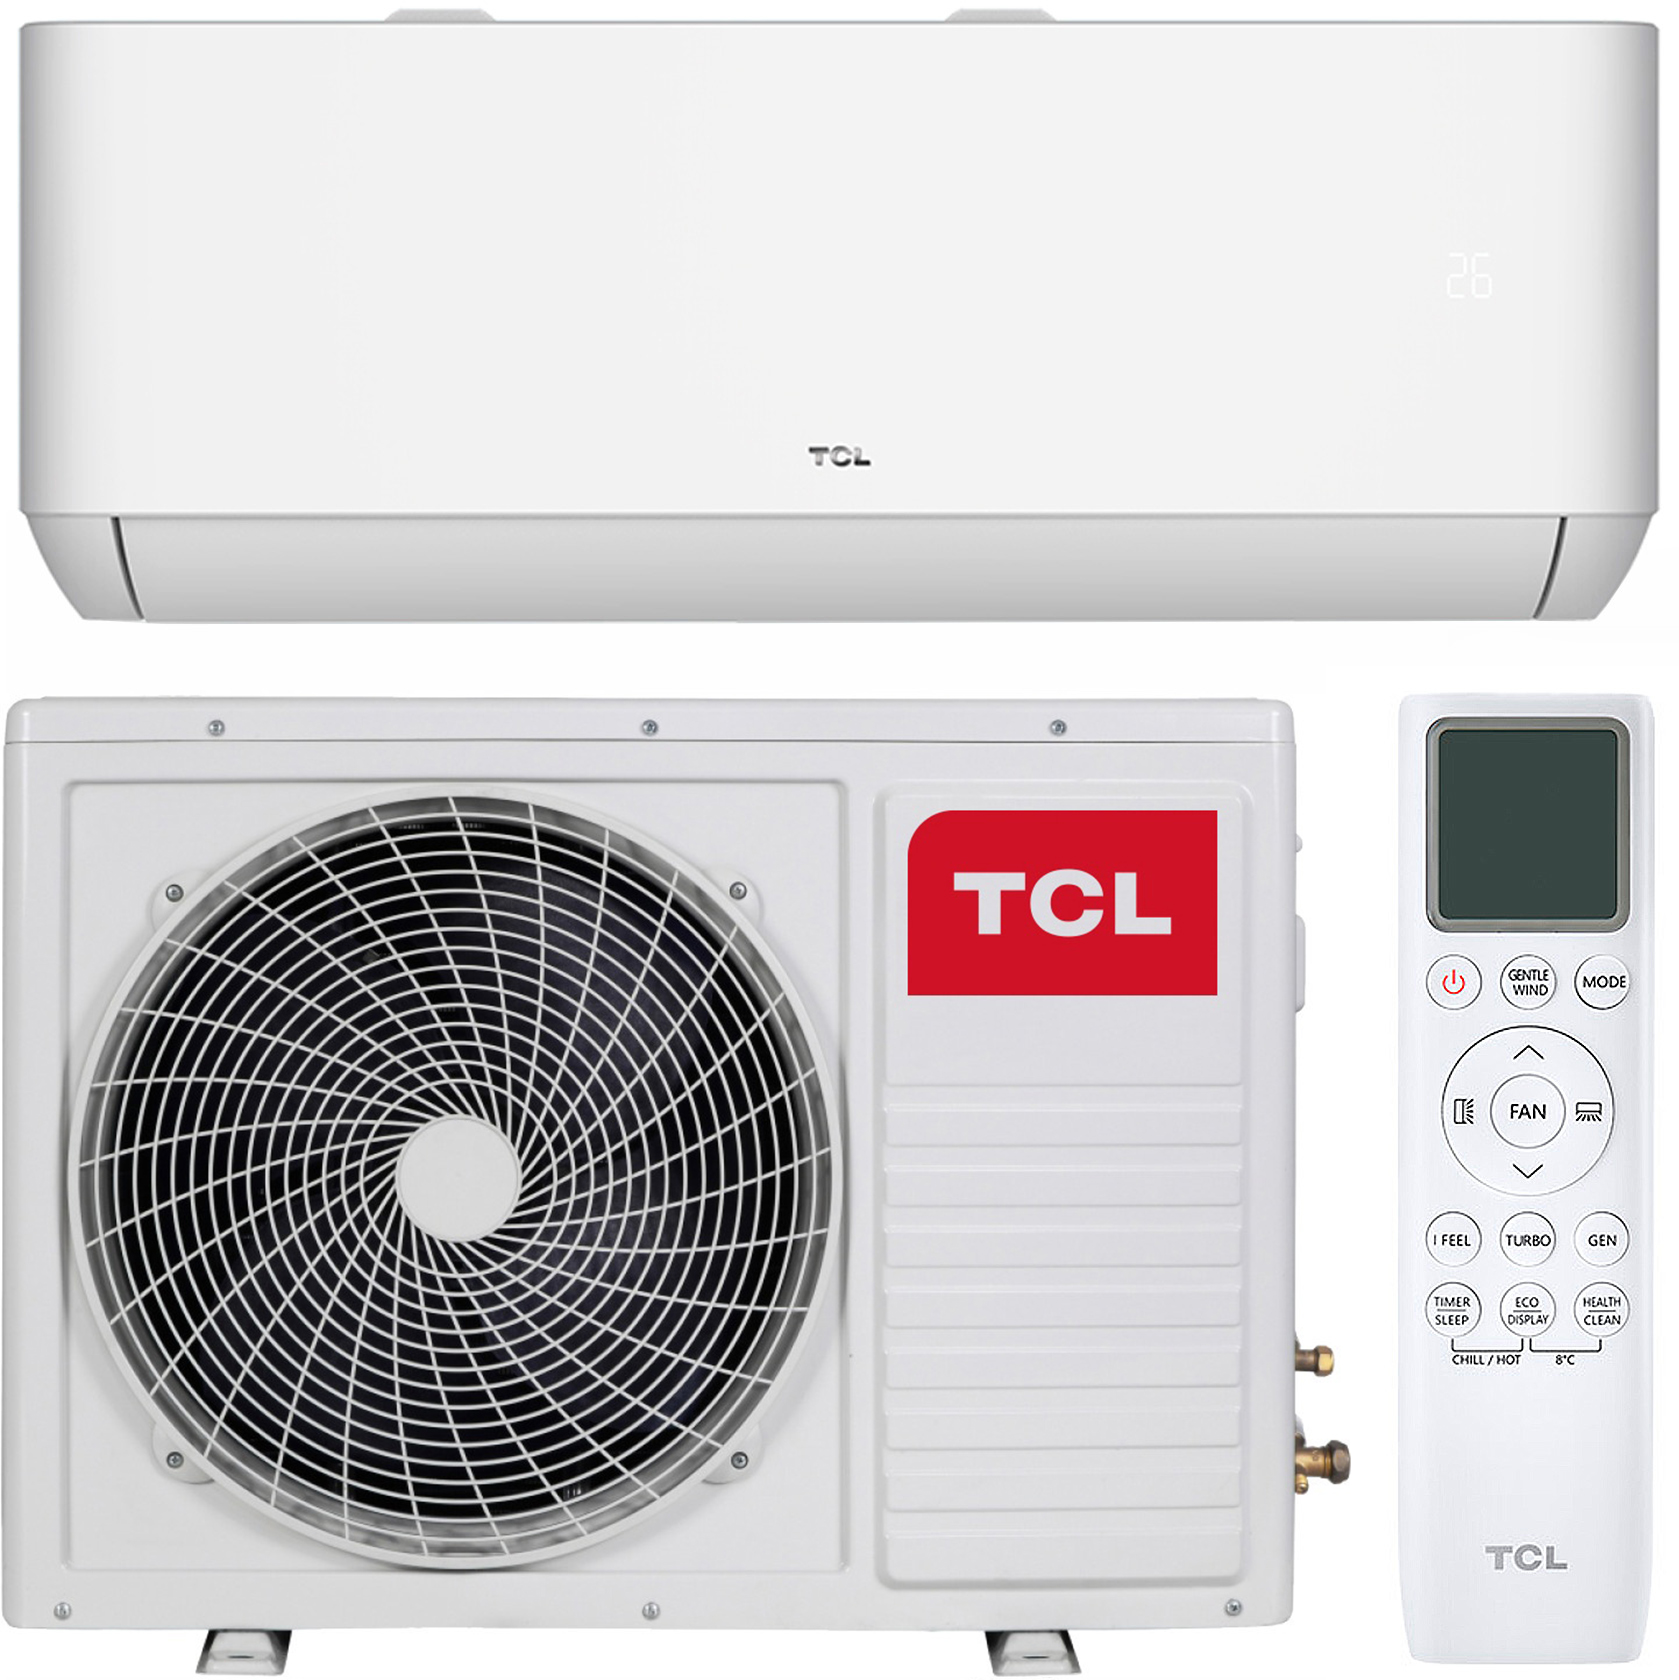 Кондиционер TCL с обогревом TCL Ocarina TAC-09CHSD/TPG11I Inverter R32 WI-FI